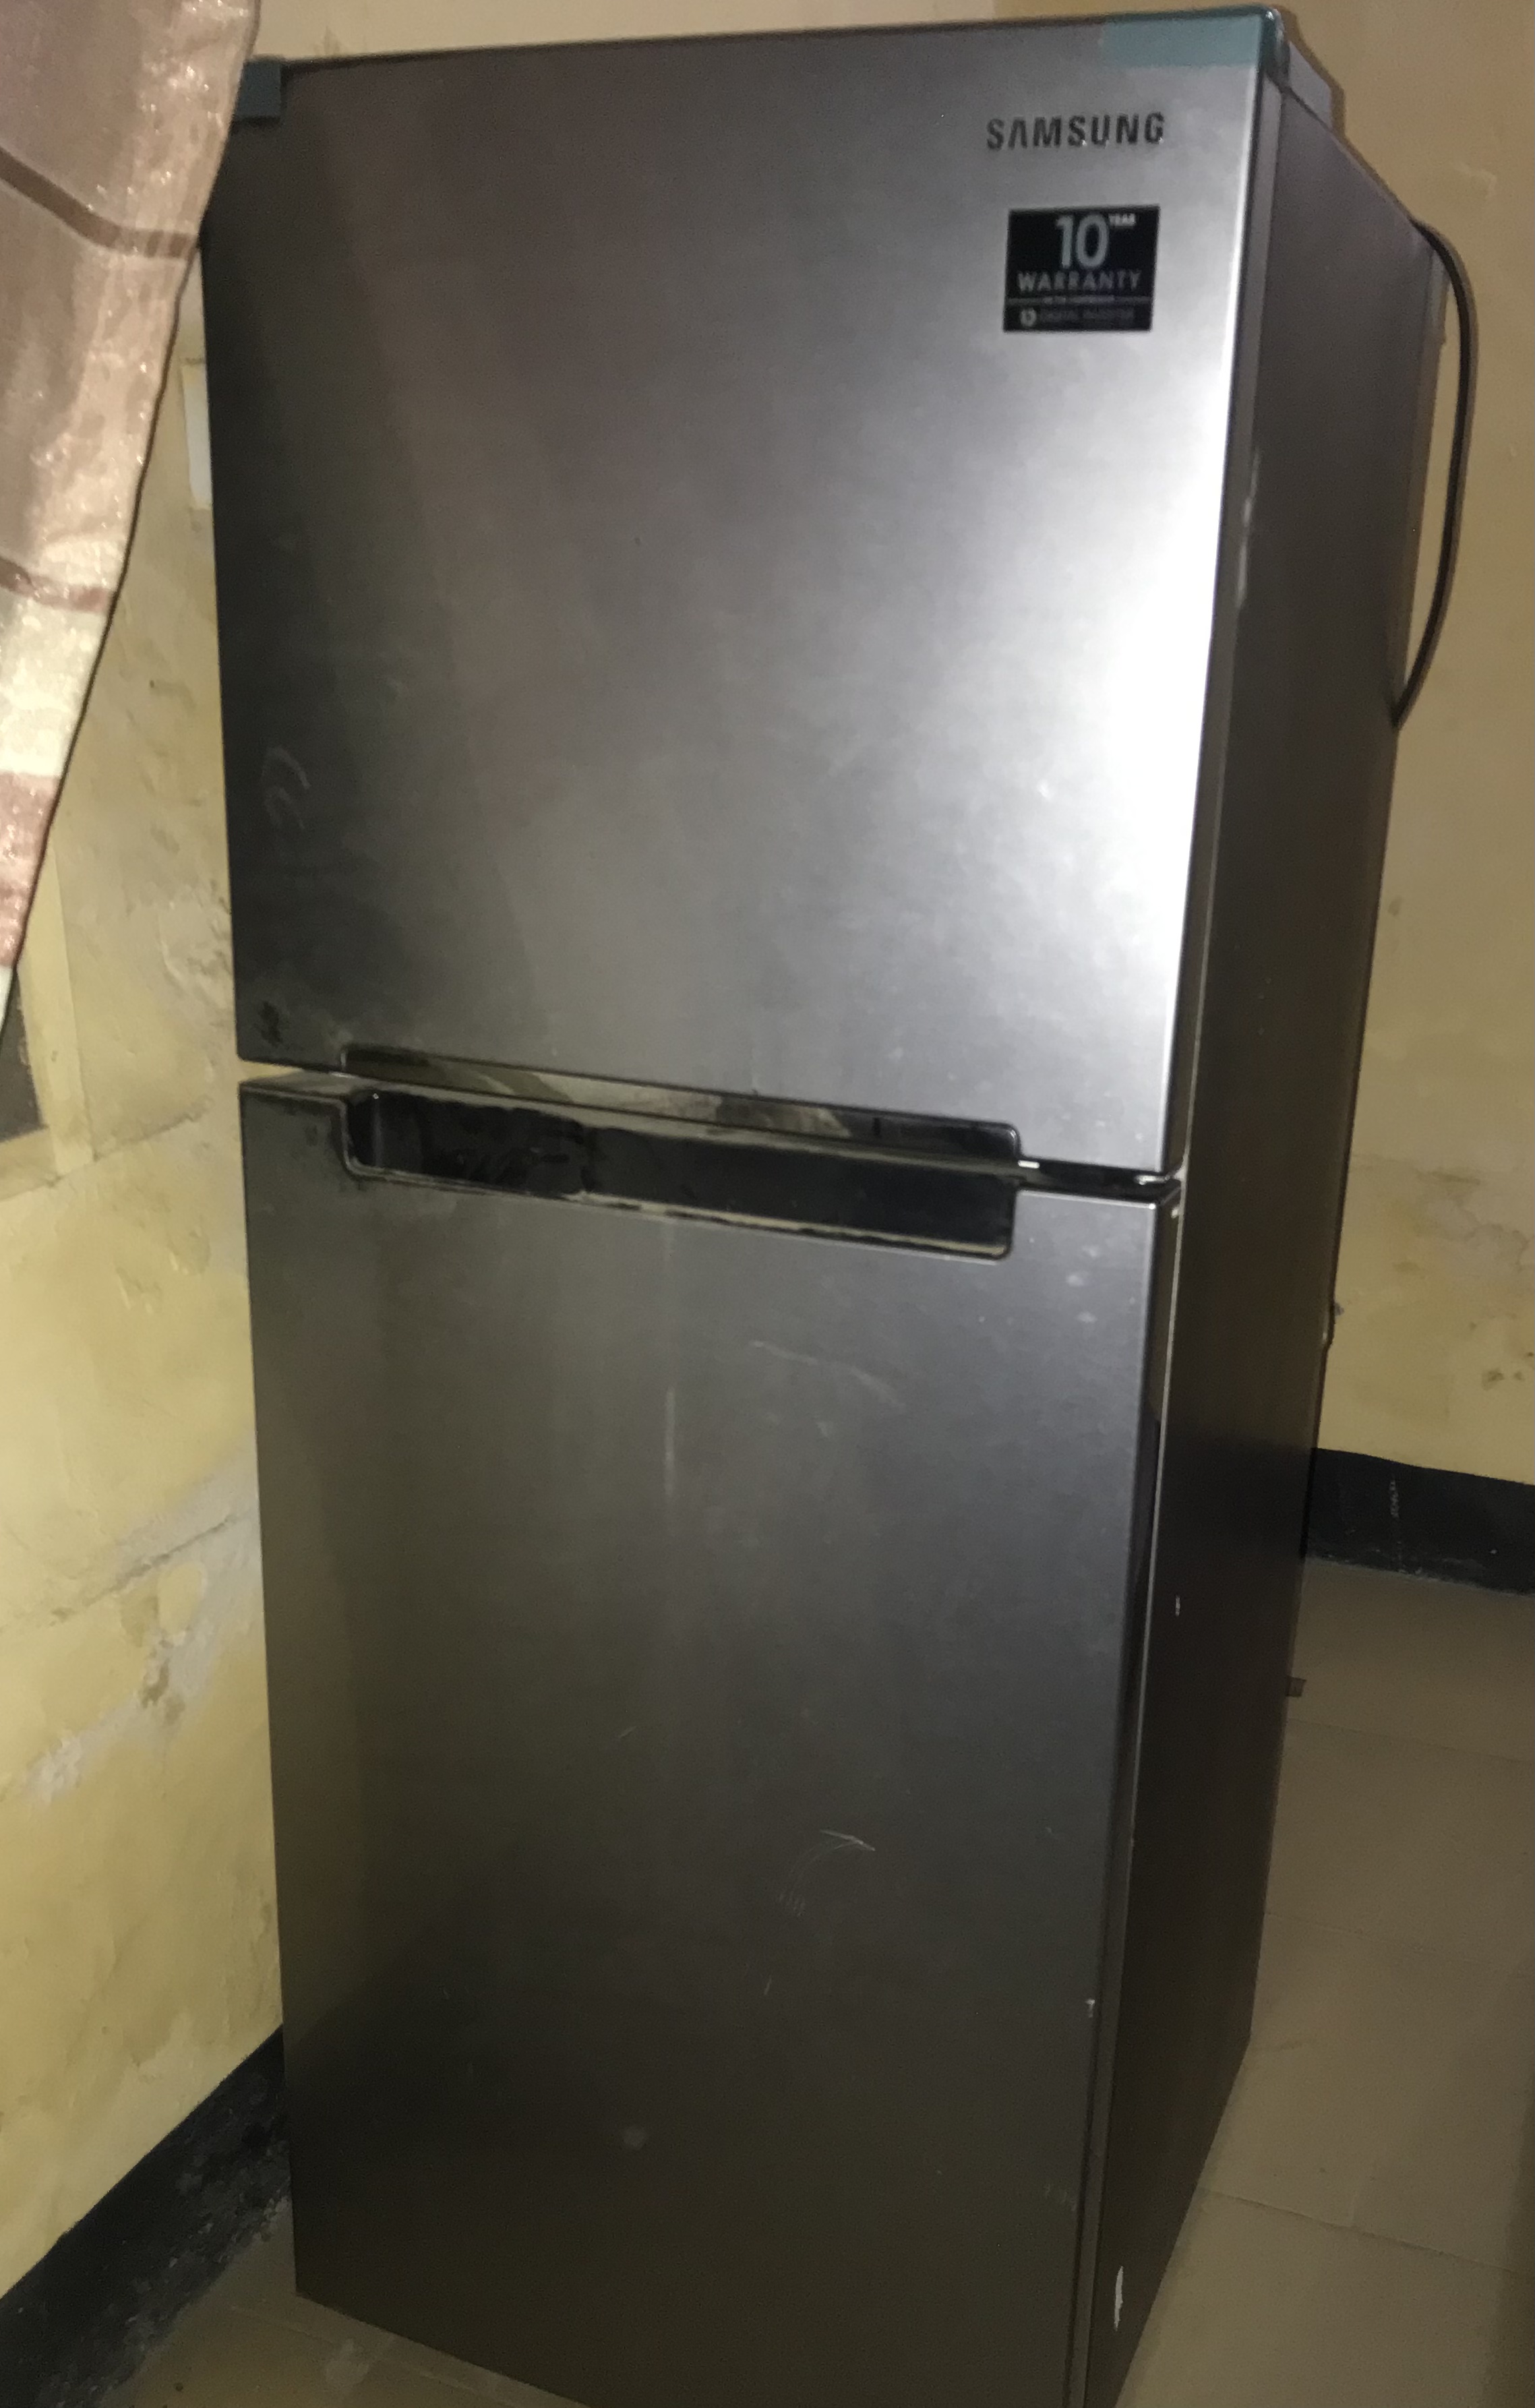 Bad double door Samsung fridge for sale